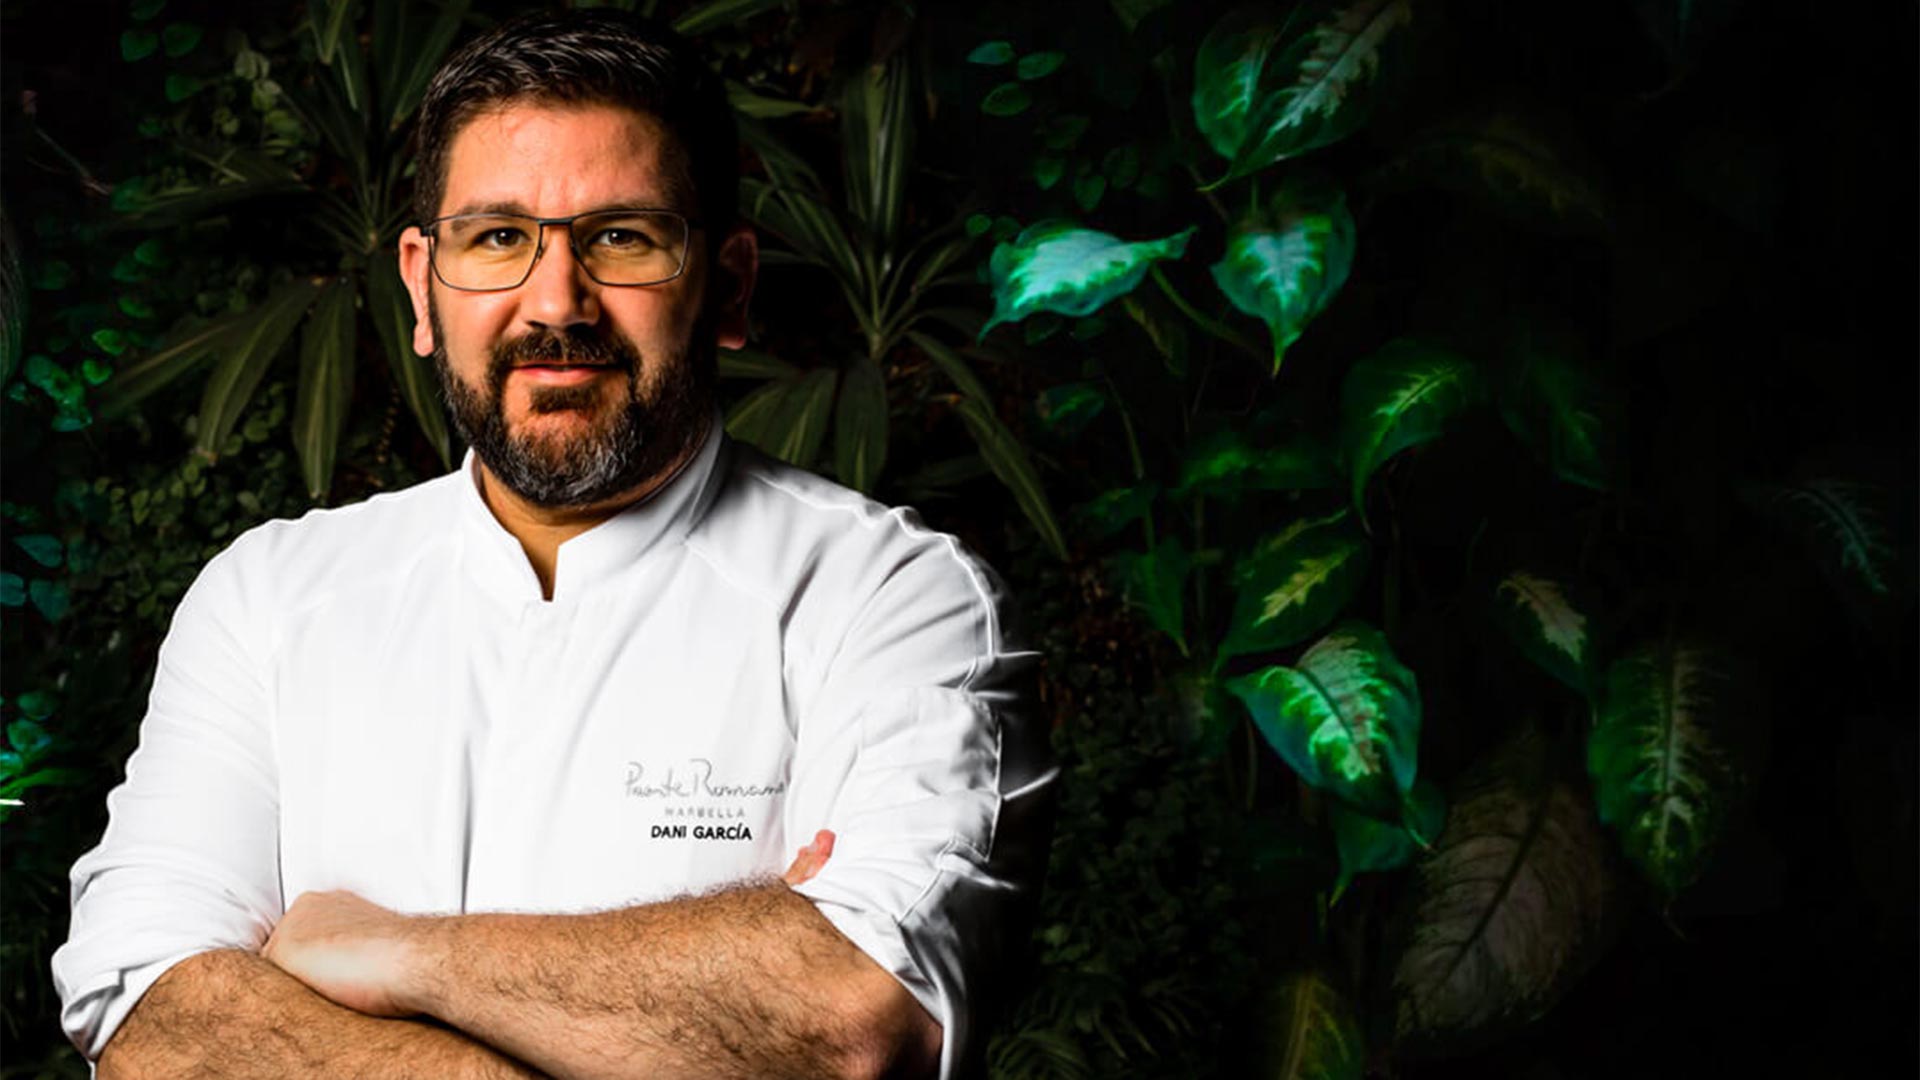 El chef de Marbella Dani García, nuevo tres estrellas Michelin